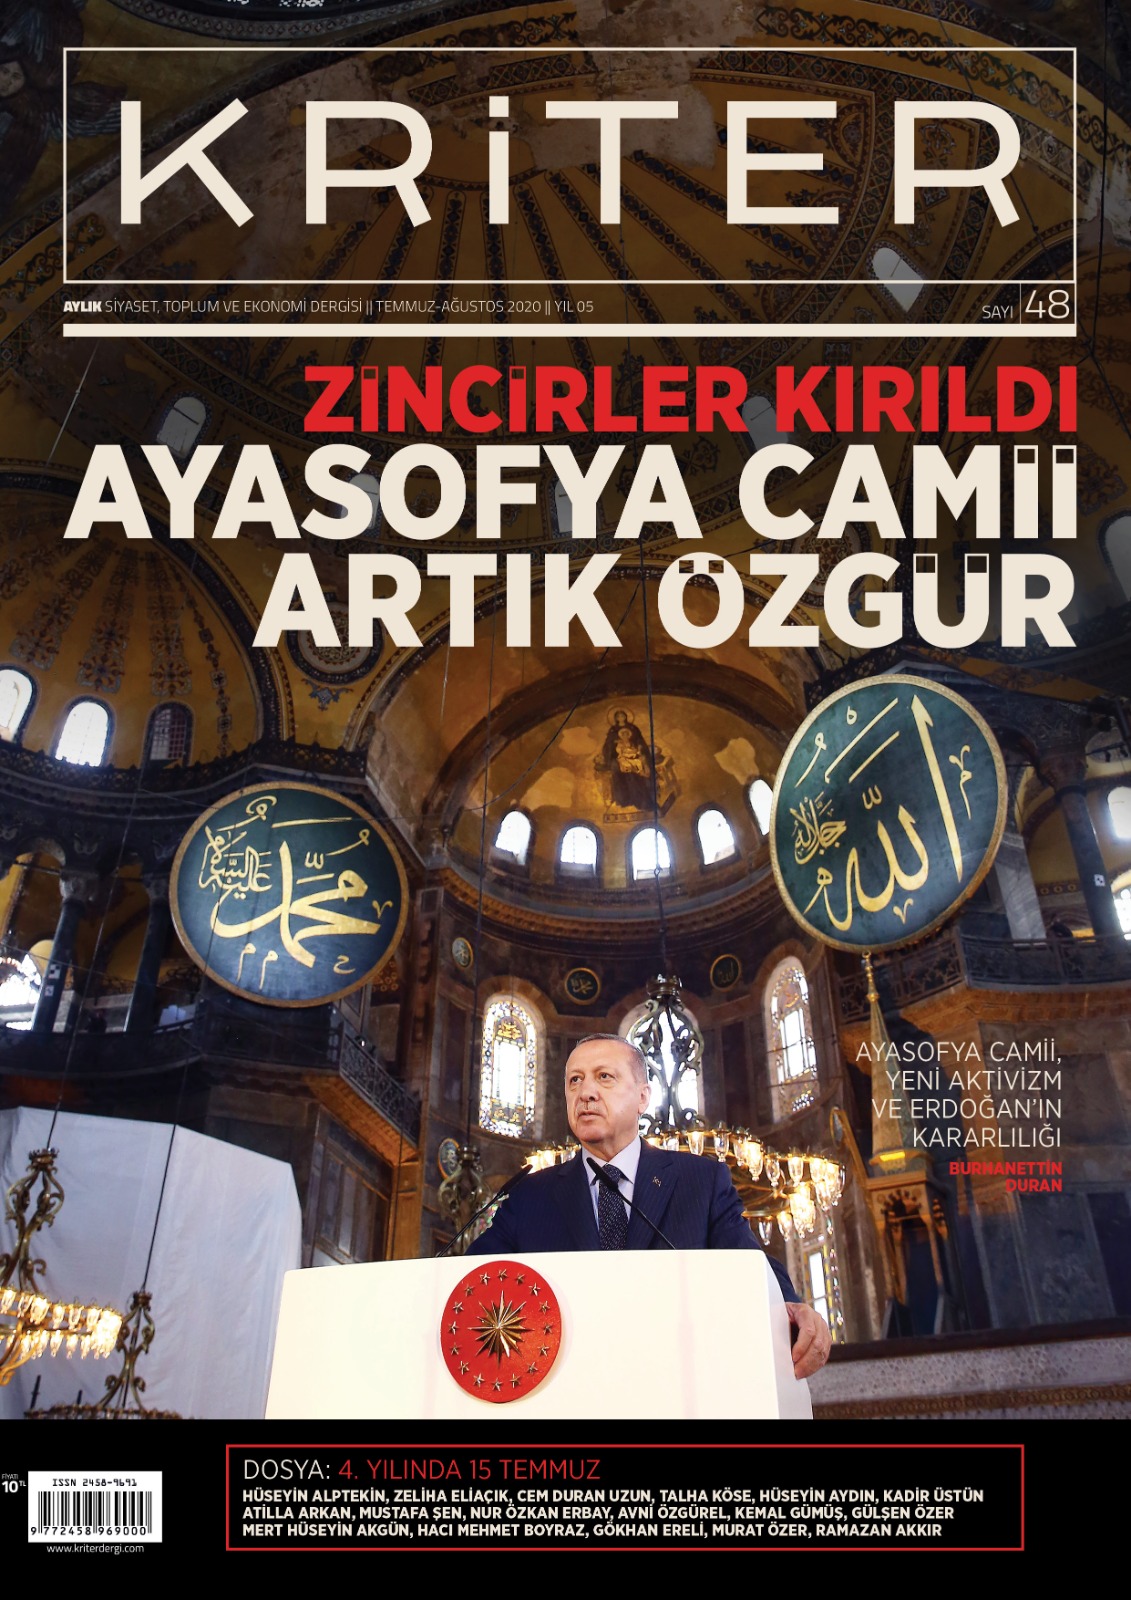 Kriter’in Temmuz-Ağustos Sayısı Çıktı: Zincirler kırıldı, Ayasofya Camii Artık Özgür